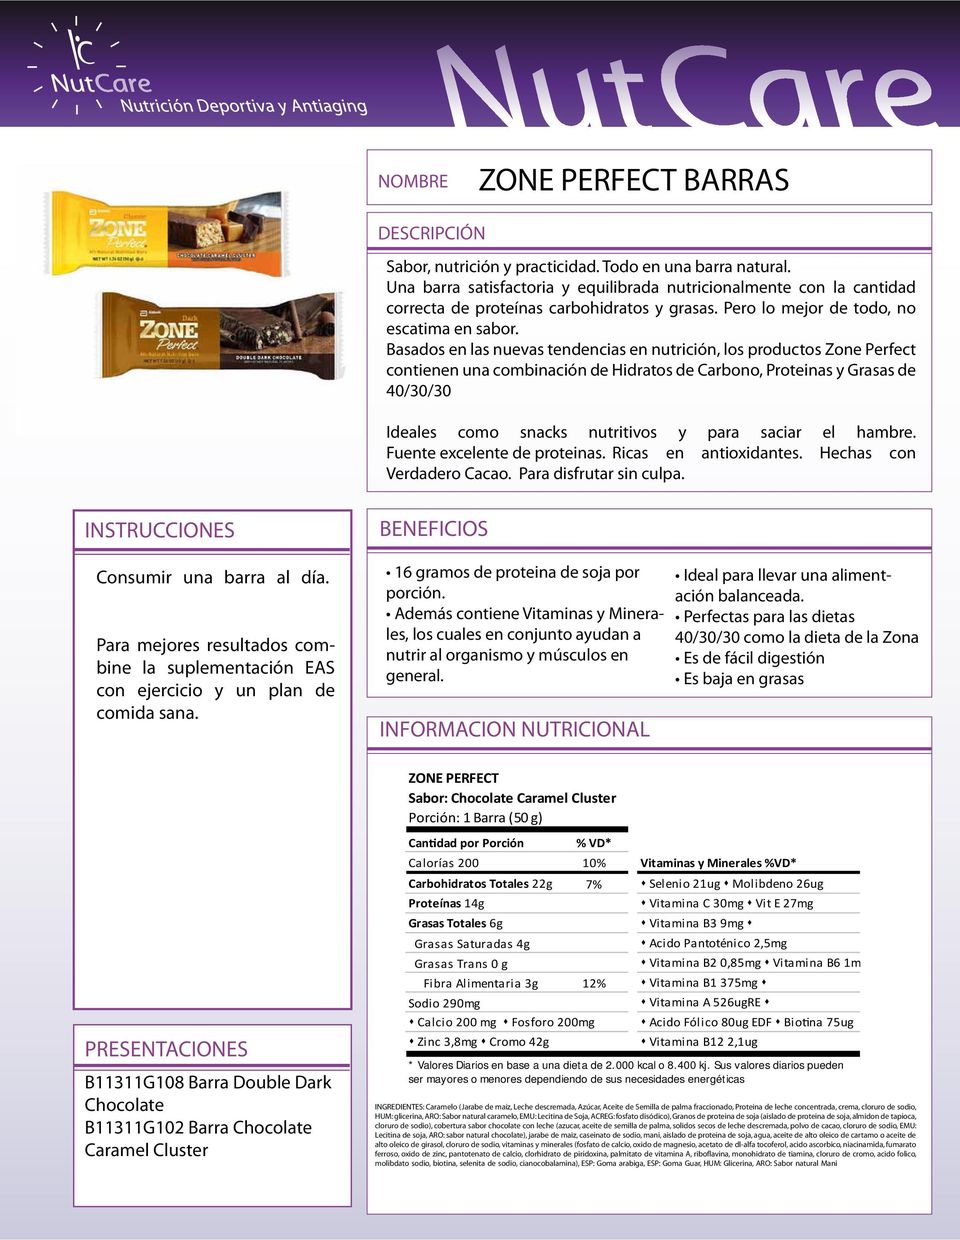 Basados en las nuevas tendencias en nutrición, los productos Zone Perfect contienen una combinación de Hidratos de Carbono, Proteinas y Grasas de 40/30/30 Ideales como snacks nutritivos y para saciar